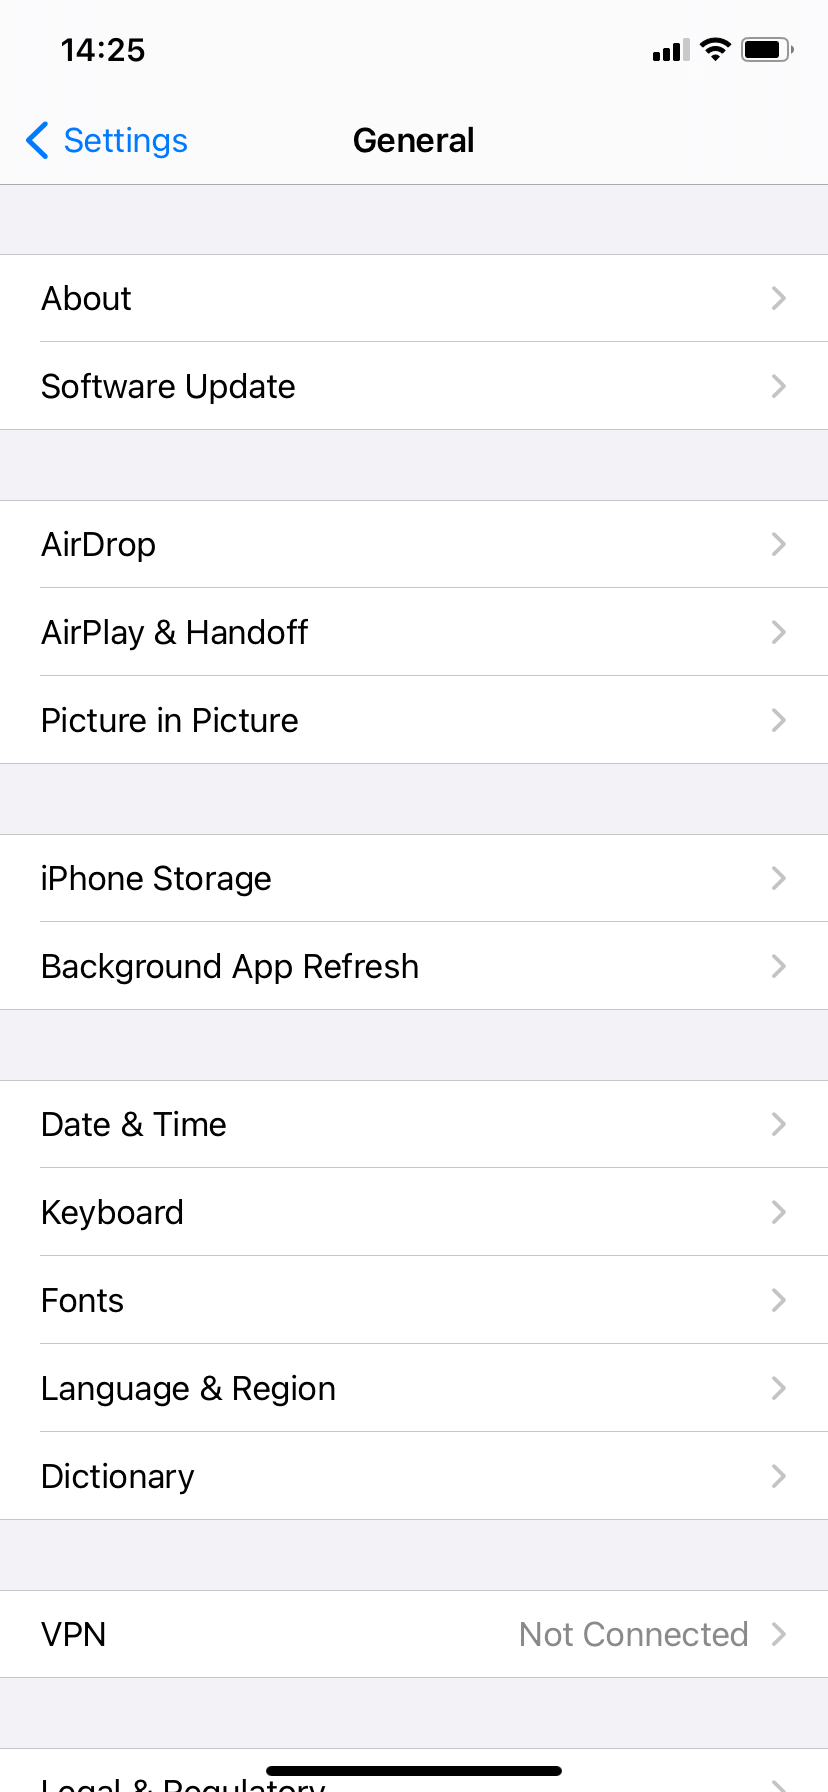 General settings in iOS